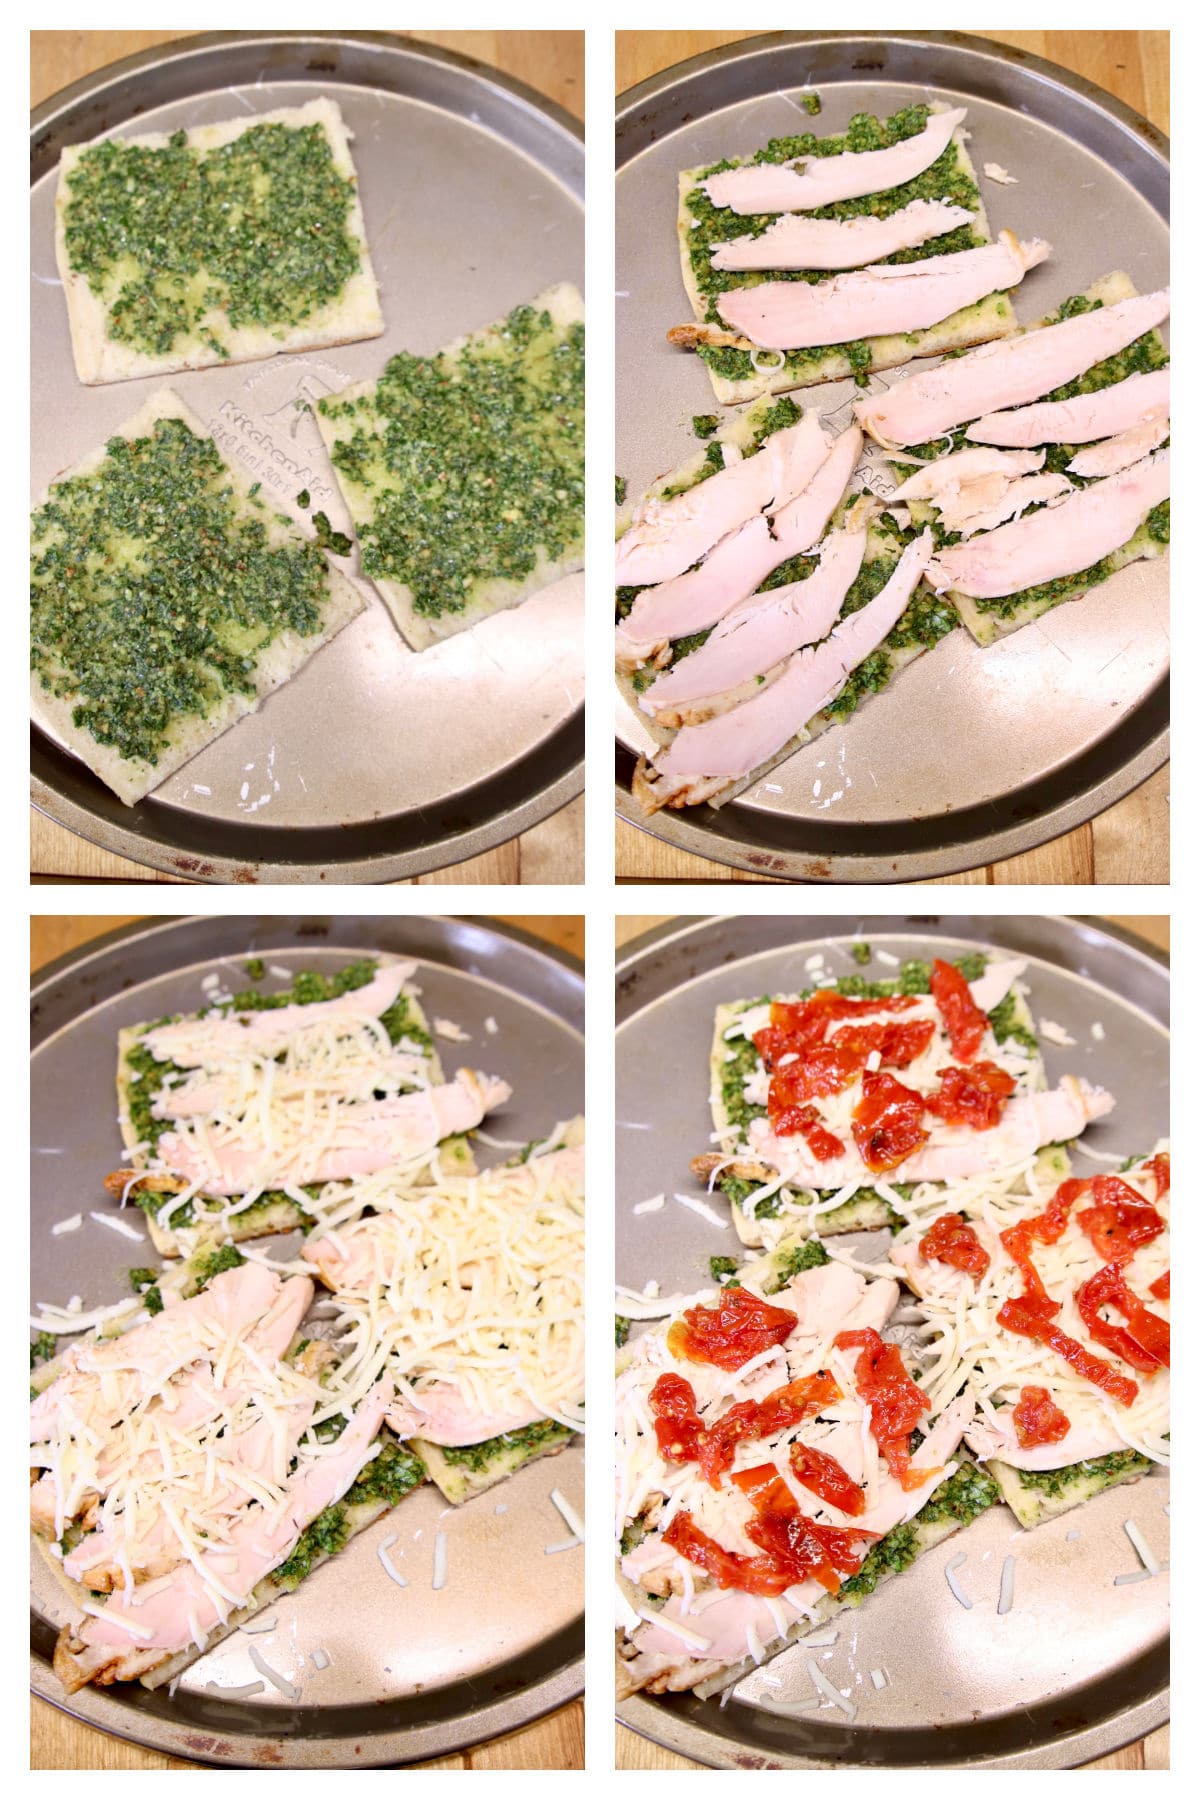 Collage making pesto chicken sandwiches with tomato and mozzarella.